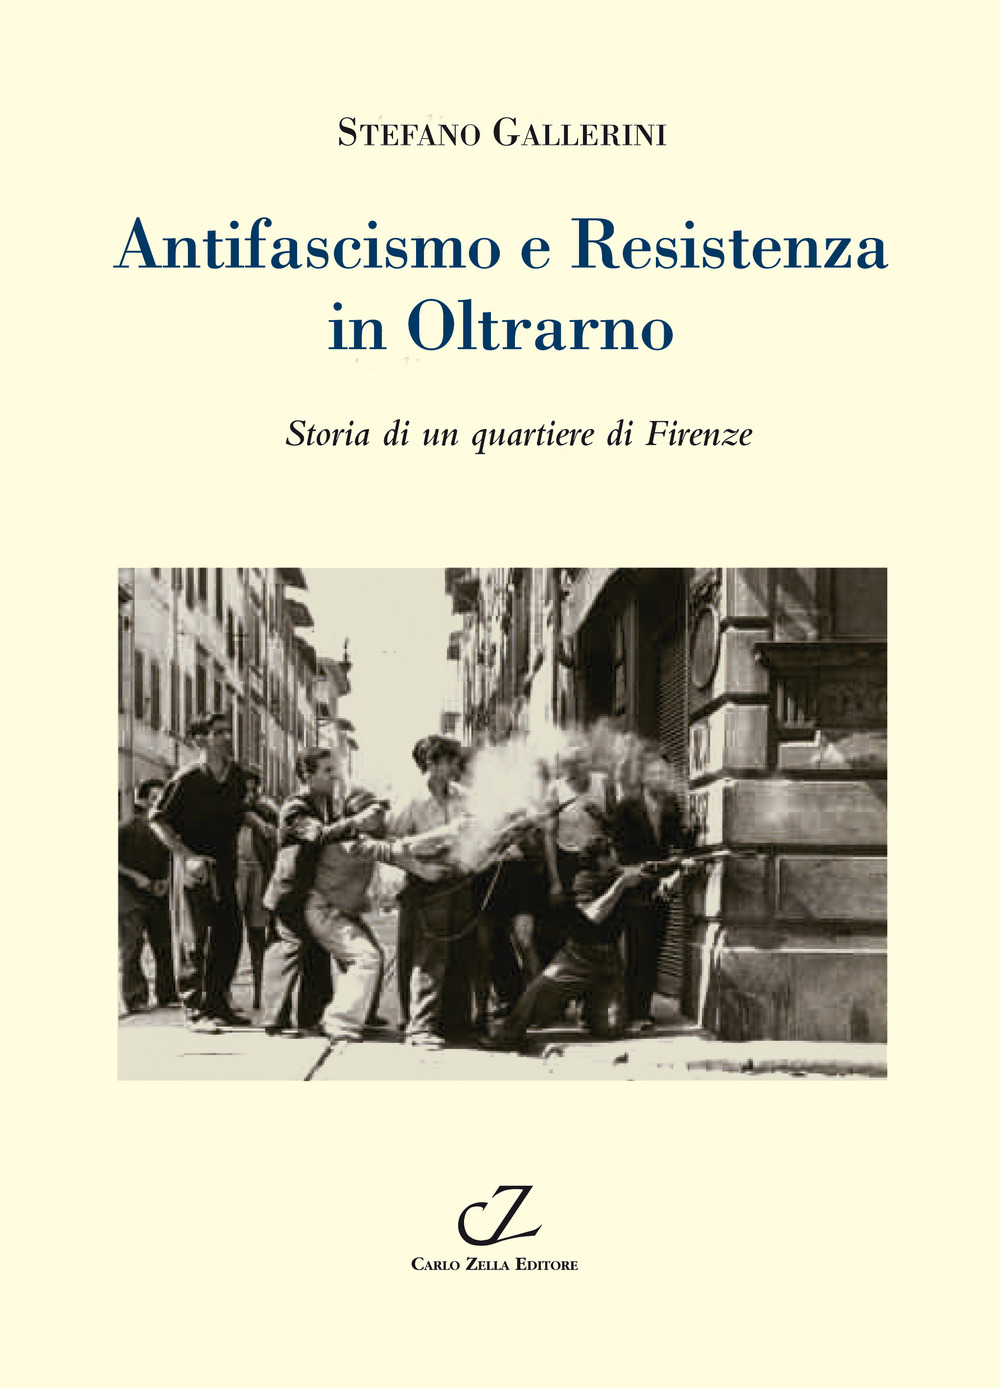 Libri Stefano Gallerini - Antifascismo E Resistenza In Oltrarno. Storia Di Un Quartiere Di Firenze NUOVO SIGILLATO, EDIZIONE DEL 19/09/2014 SUBITO DISPONIBILE